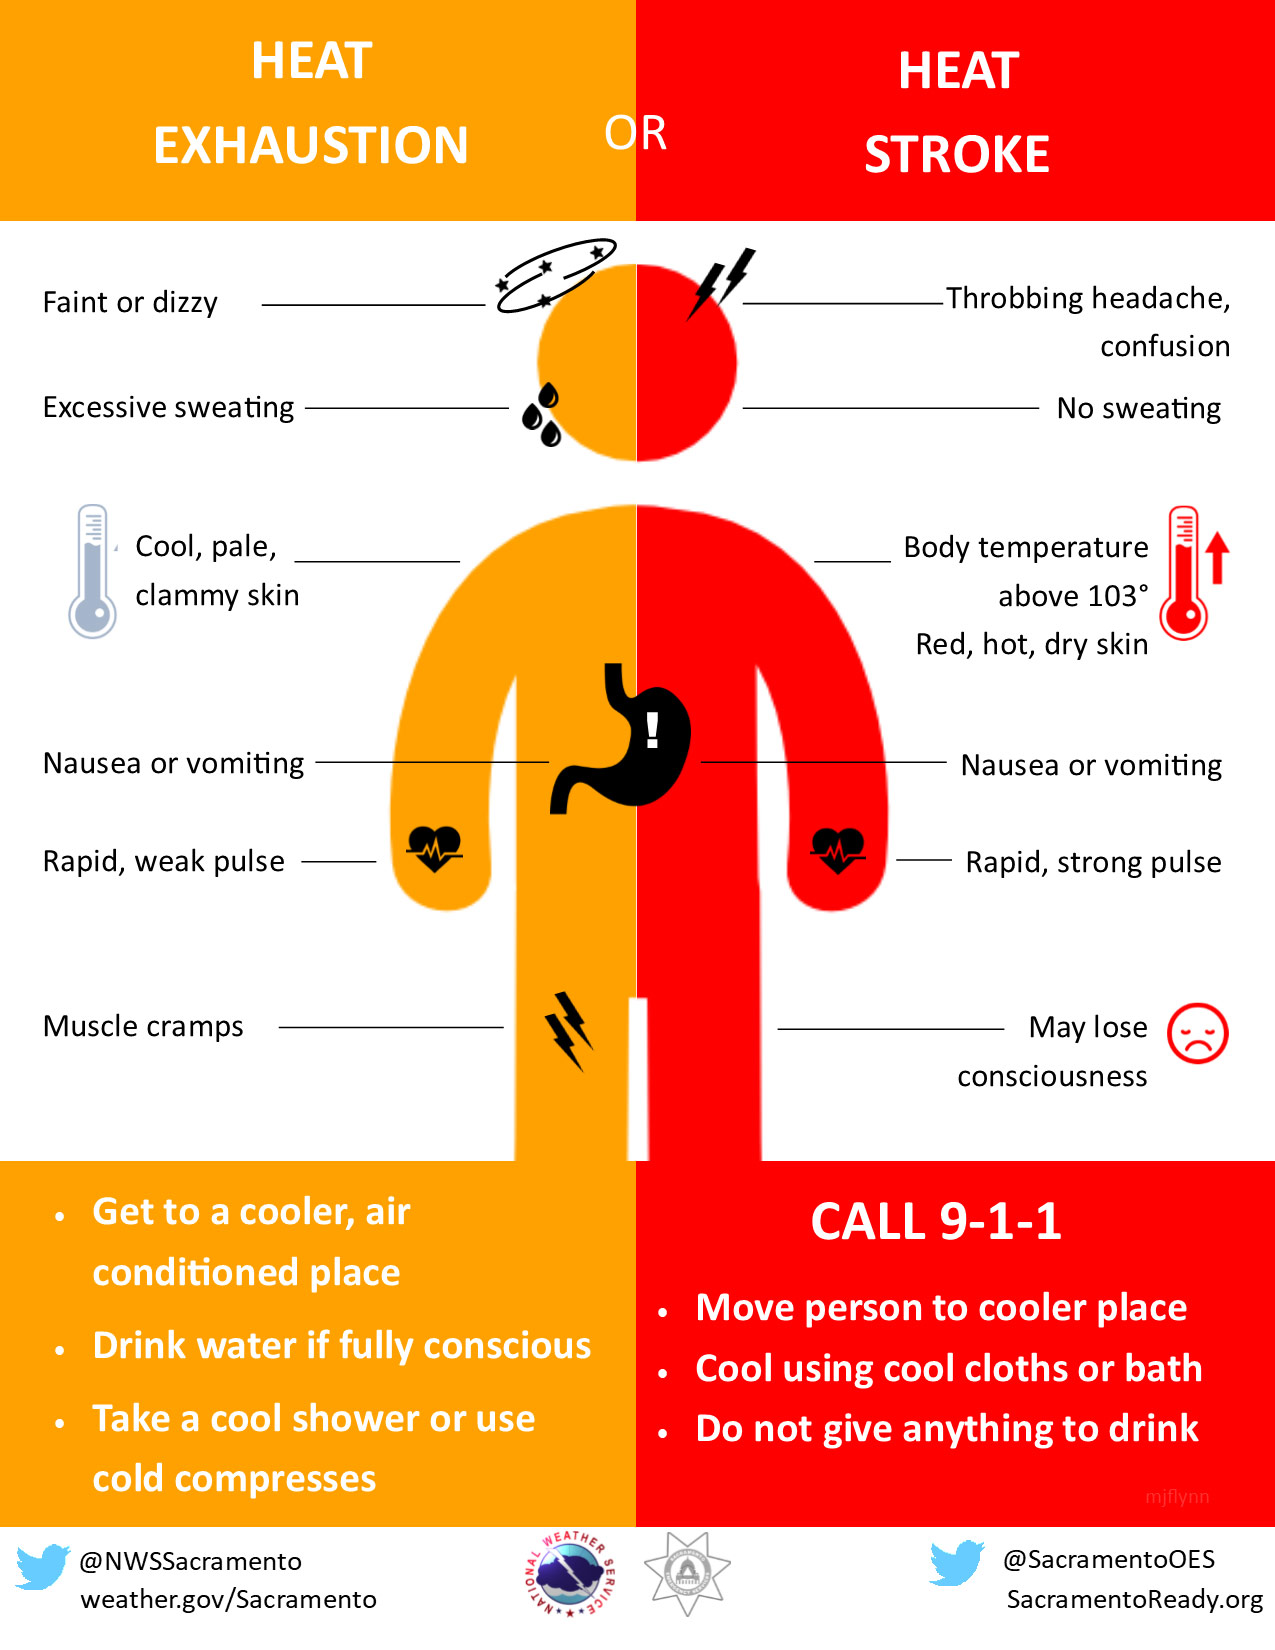 Symptoms of heat exhaustion versus heat stroke